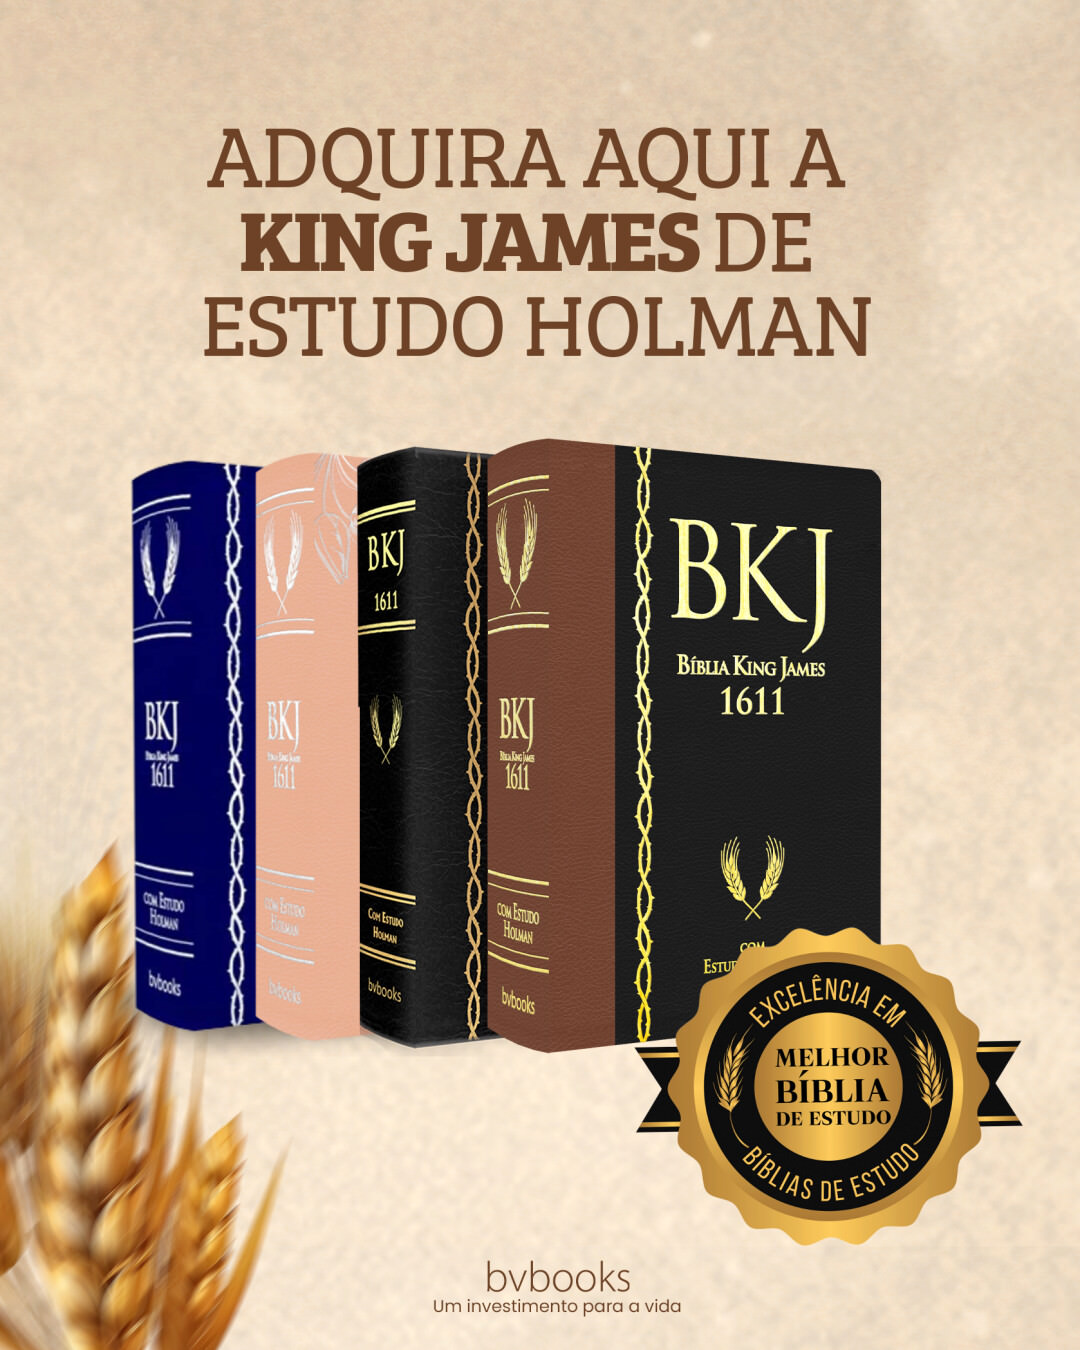 Adquira aqui a King James de Estudo Holman